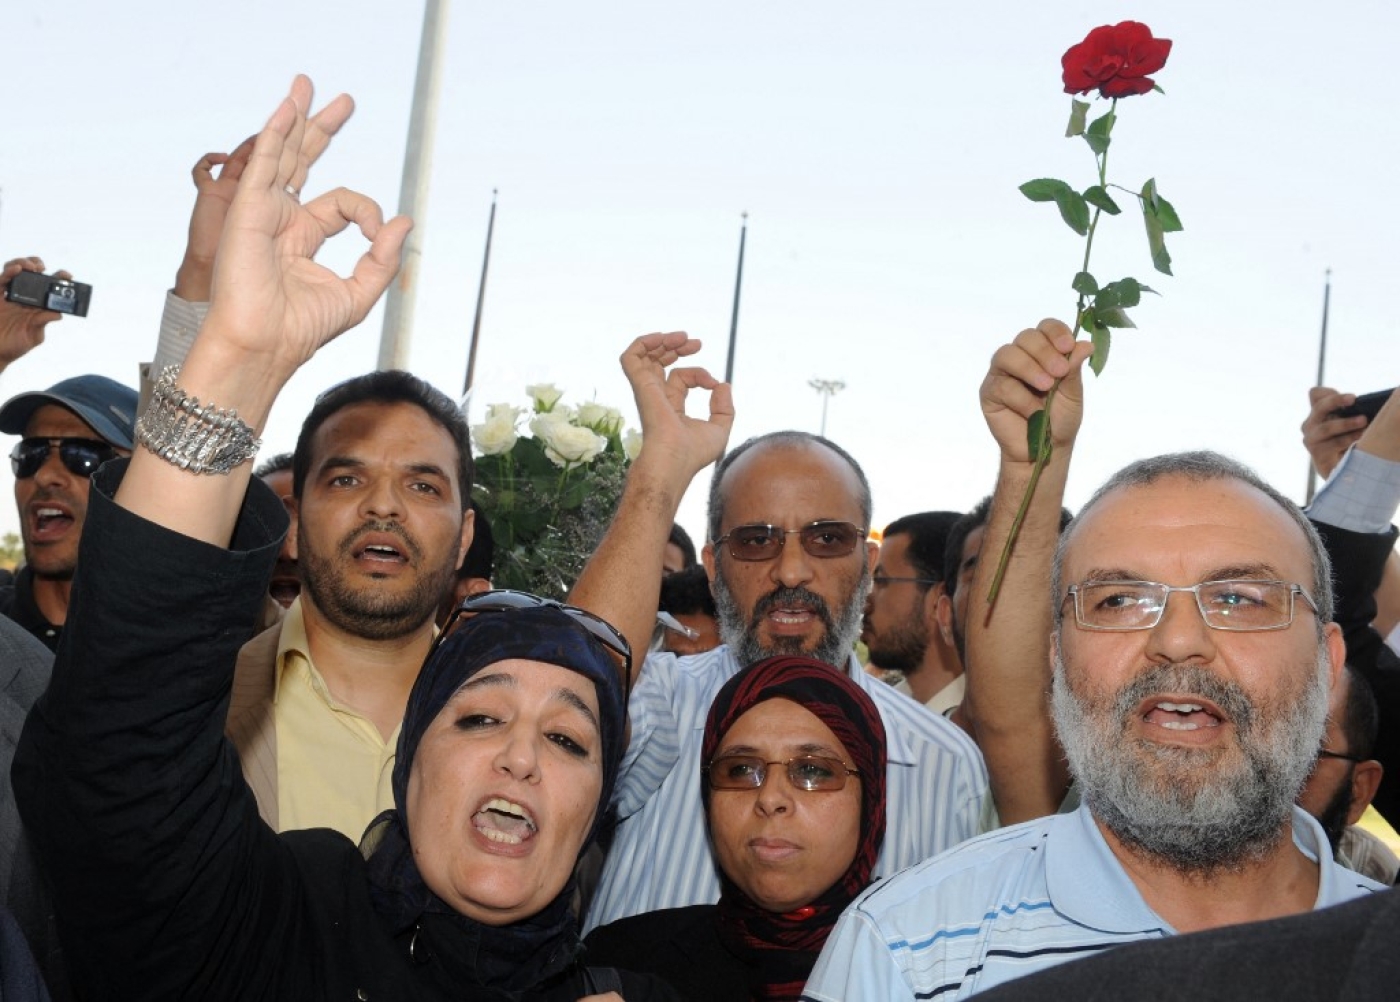 La porte-parole d’Al Adl Wal Ihsane Nadia Yassine pendant une manifestation, le 3 juin 2010 à Casablanca (AFP, Abdelhak Senna)